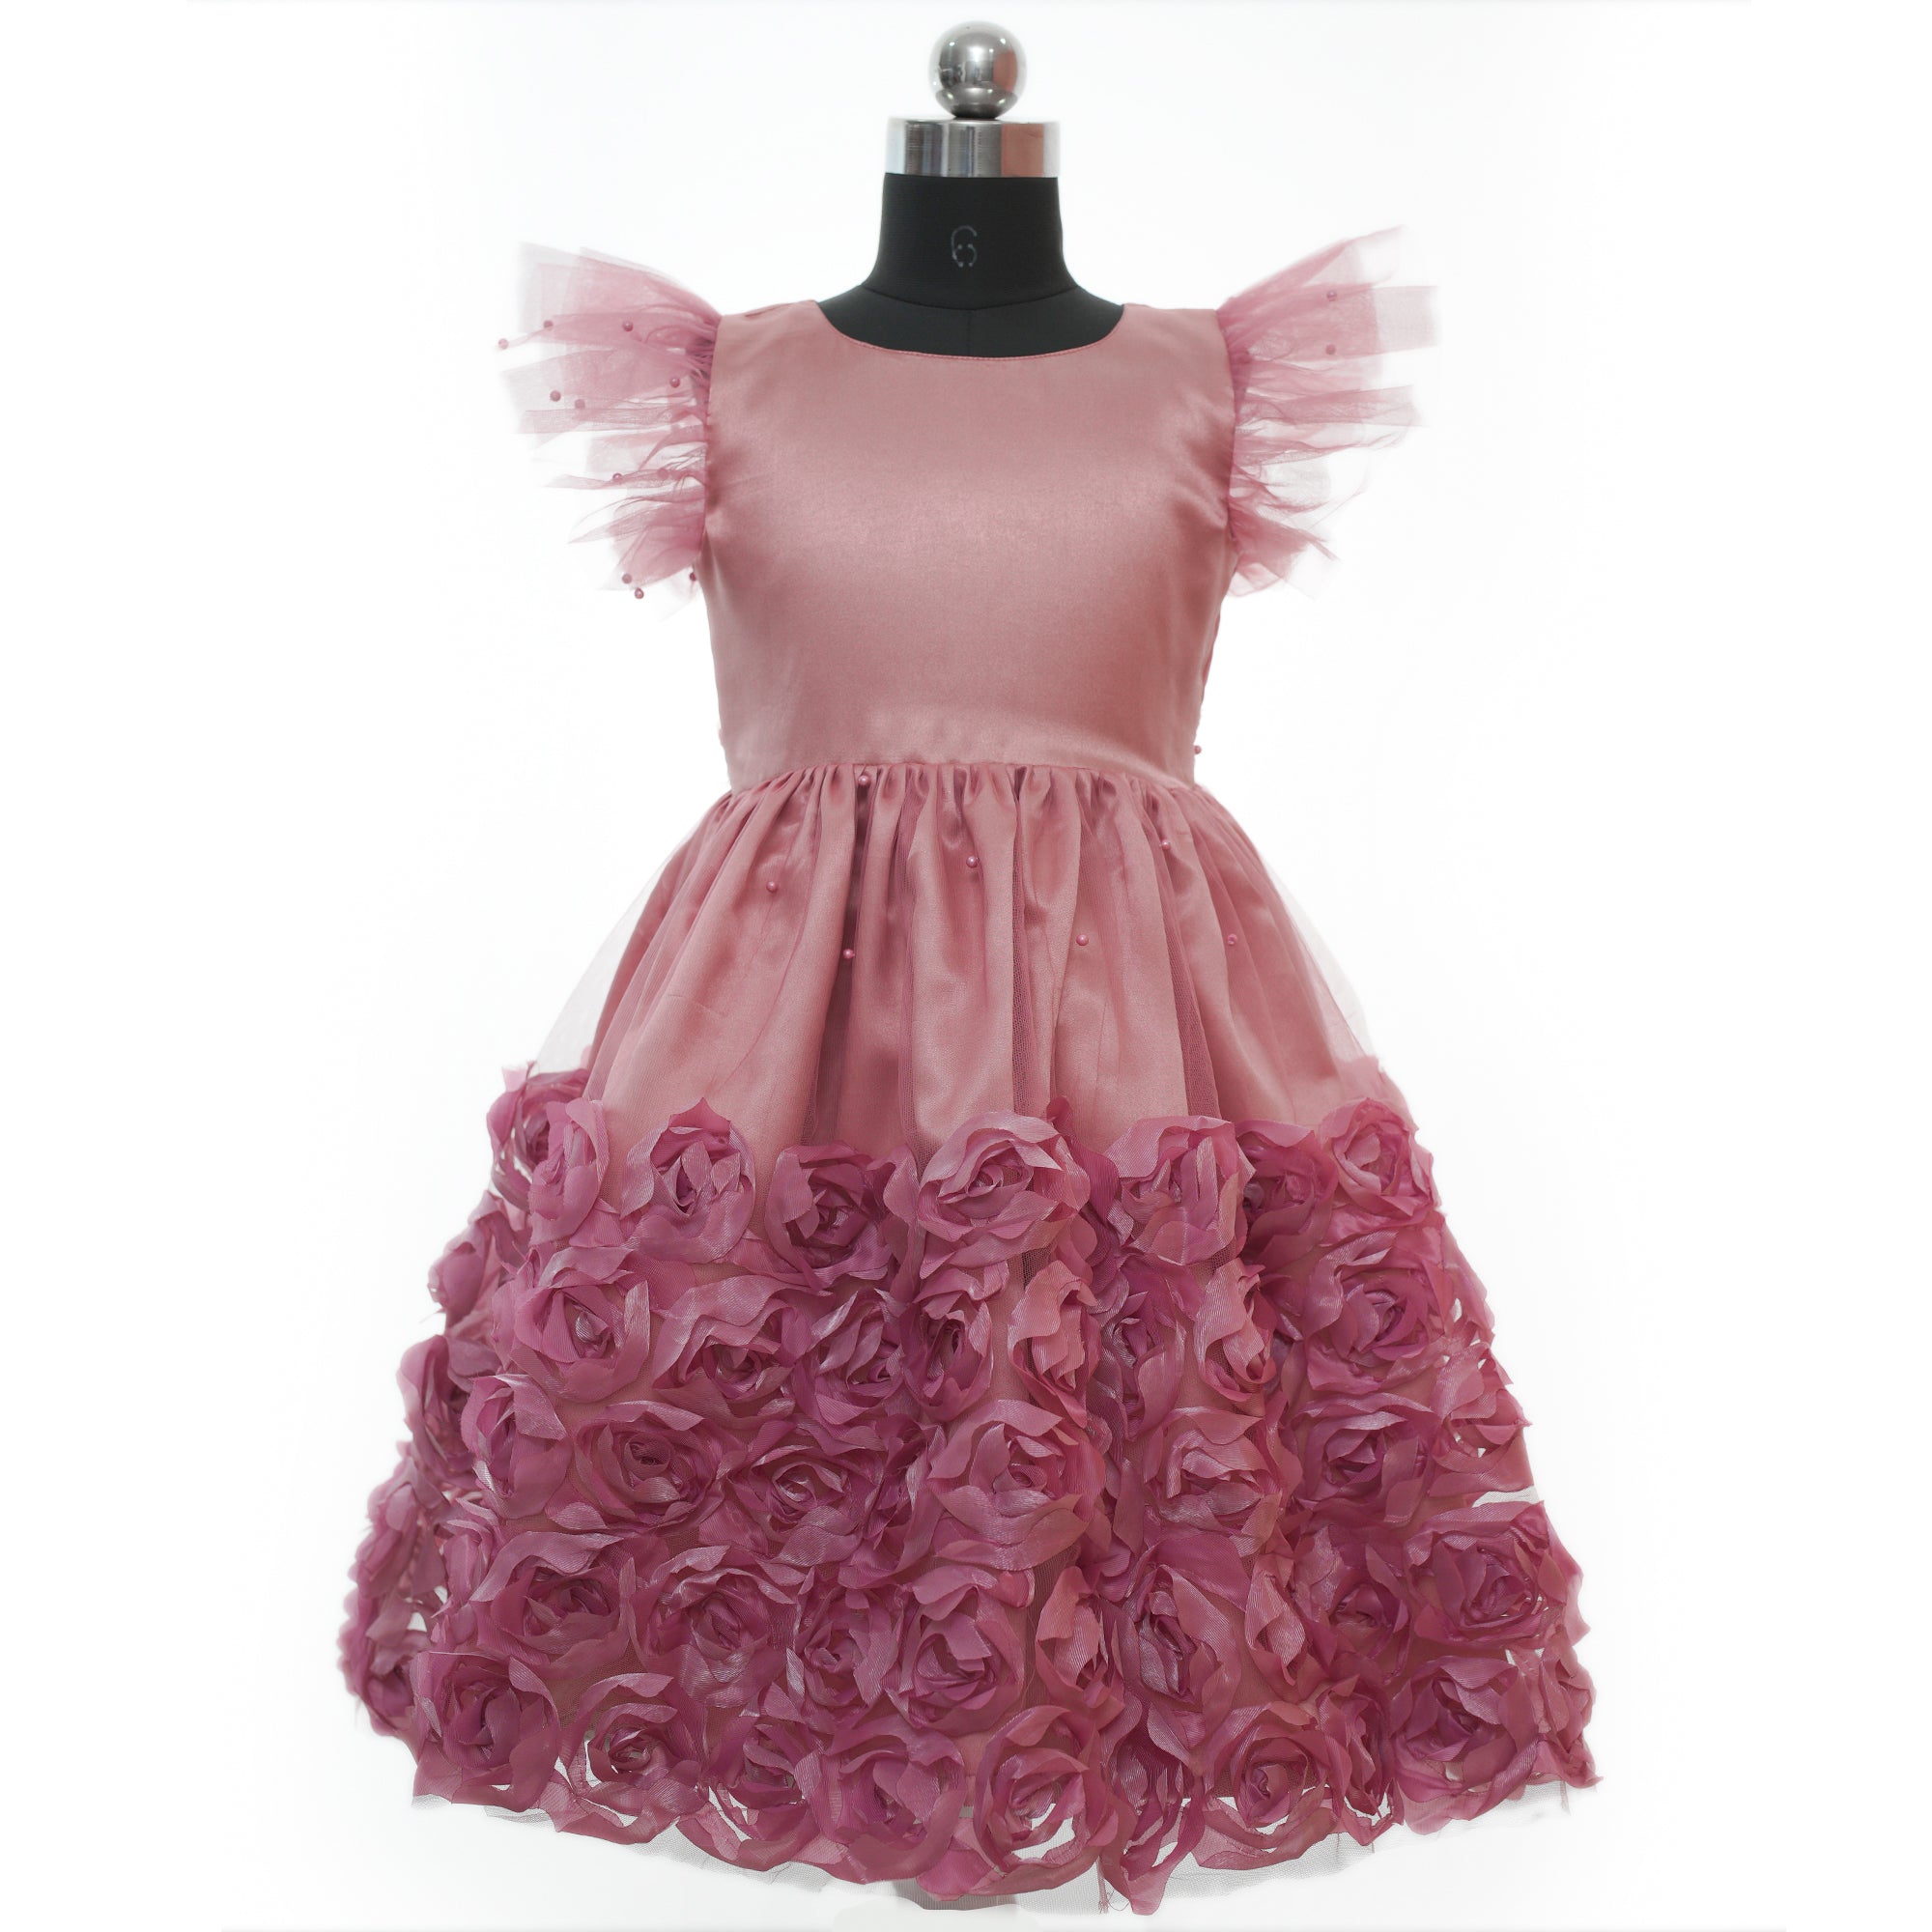 Buy Girls party wear dresses onlinebirthday dressesdresses for girls